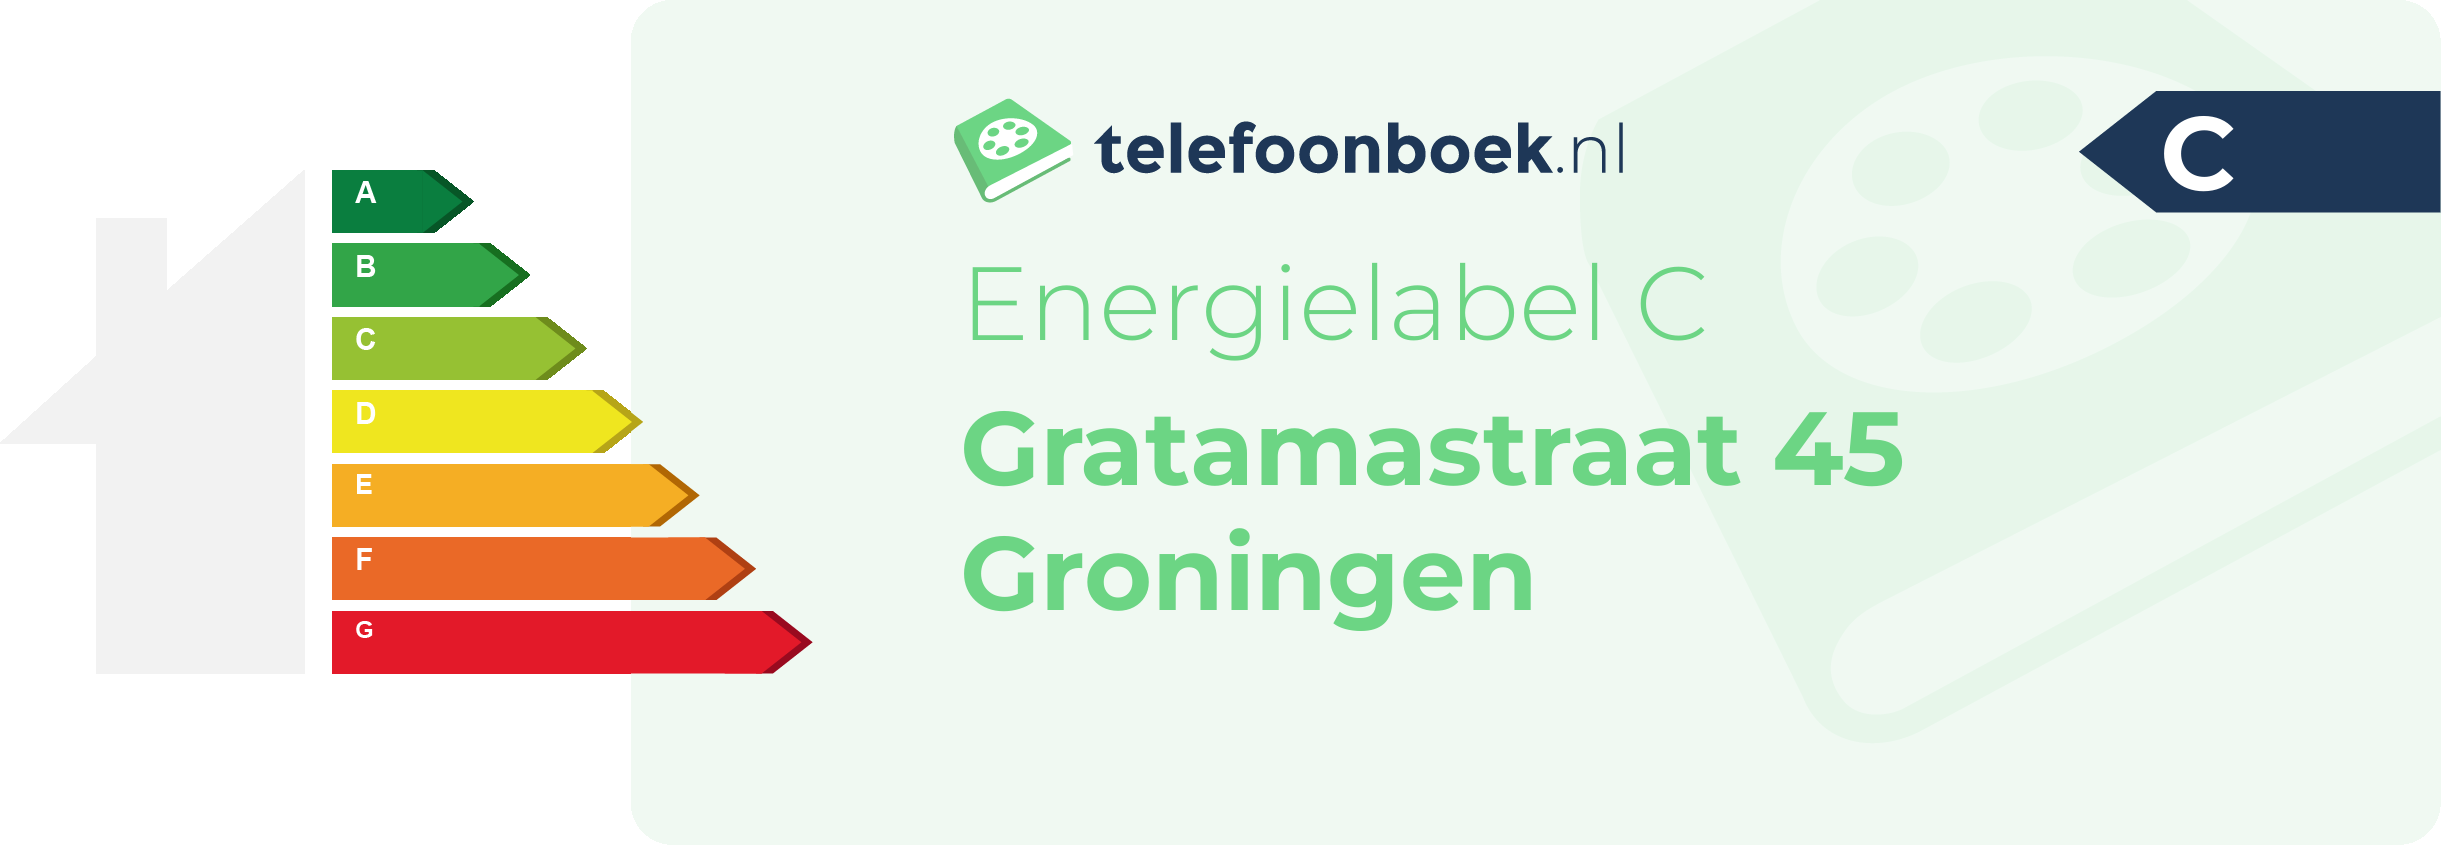 Energielabel Gratamastraat 45 Groningen